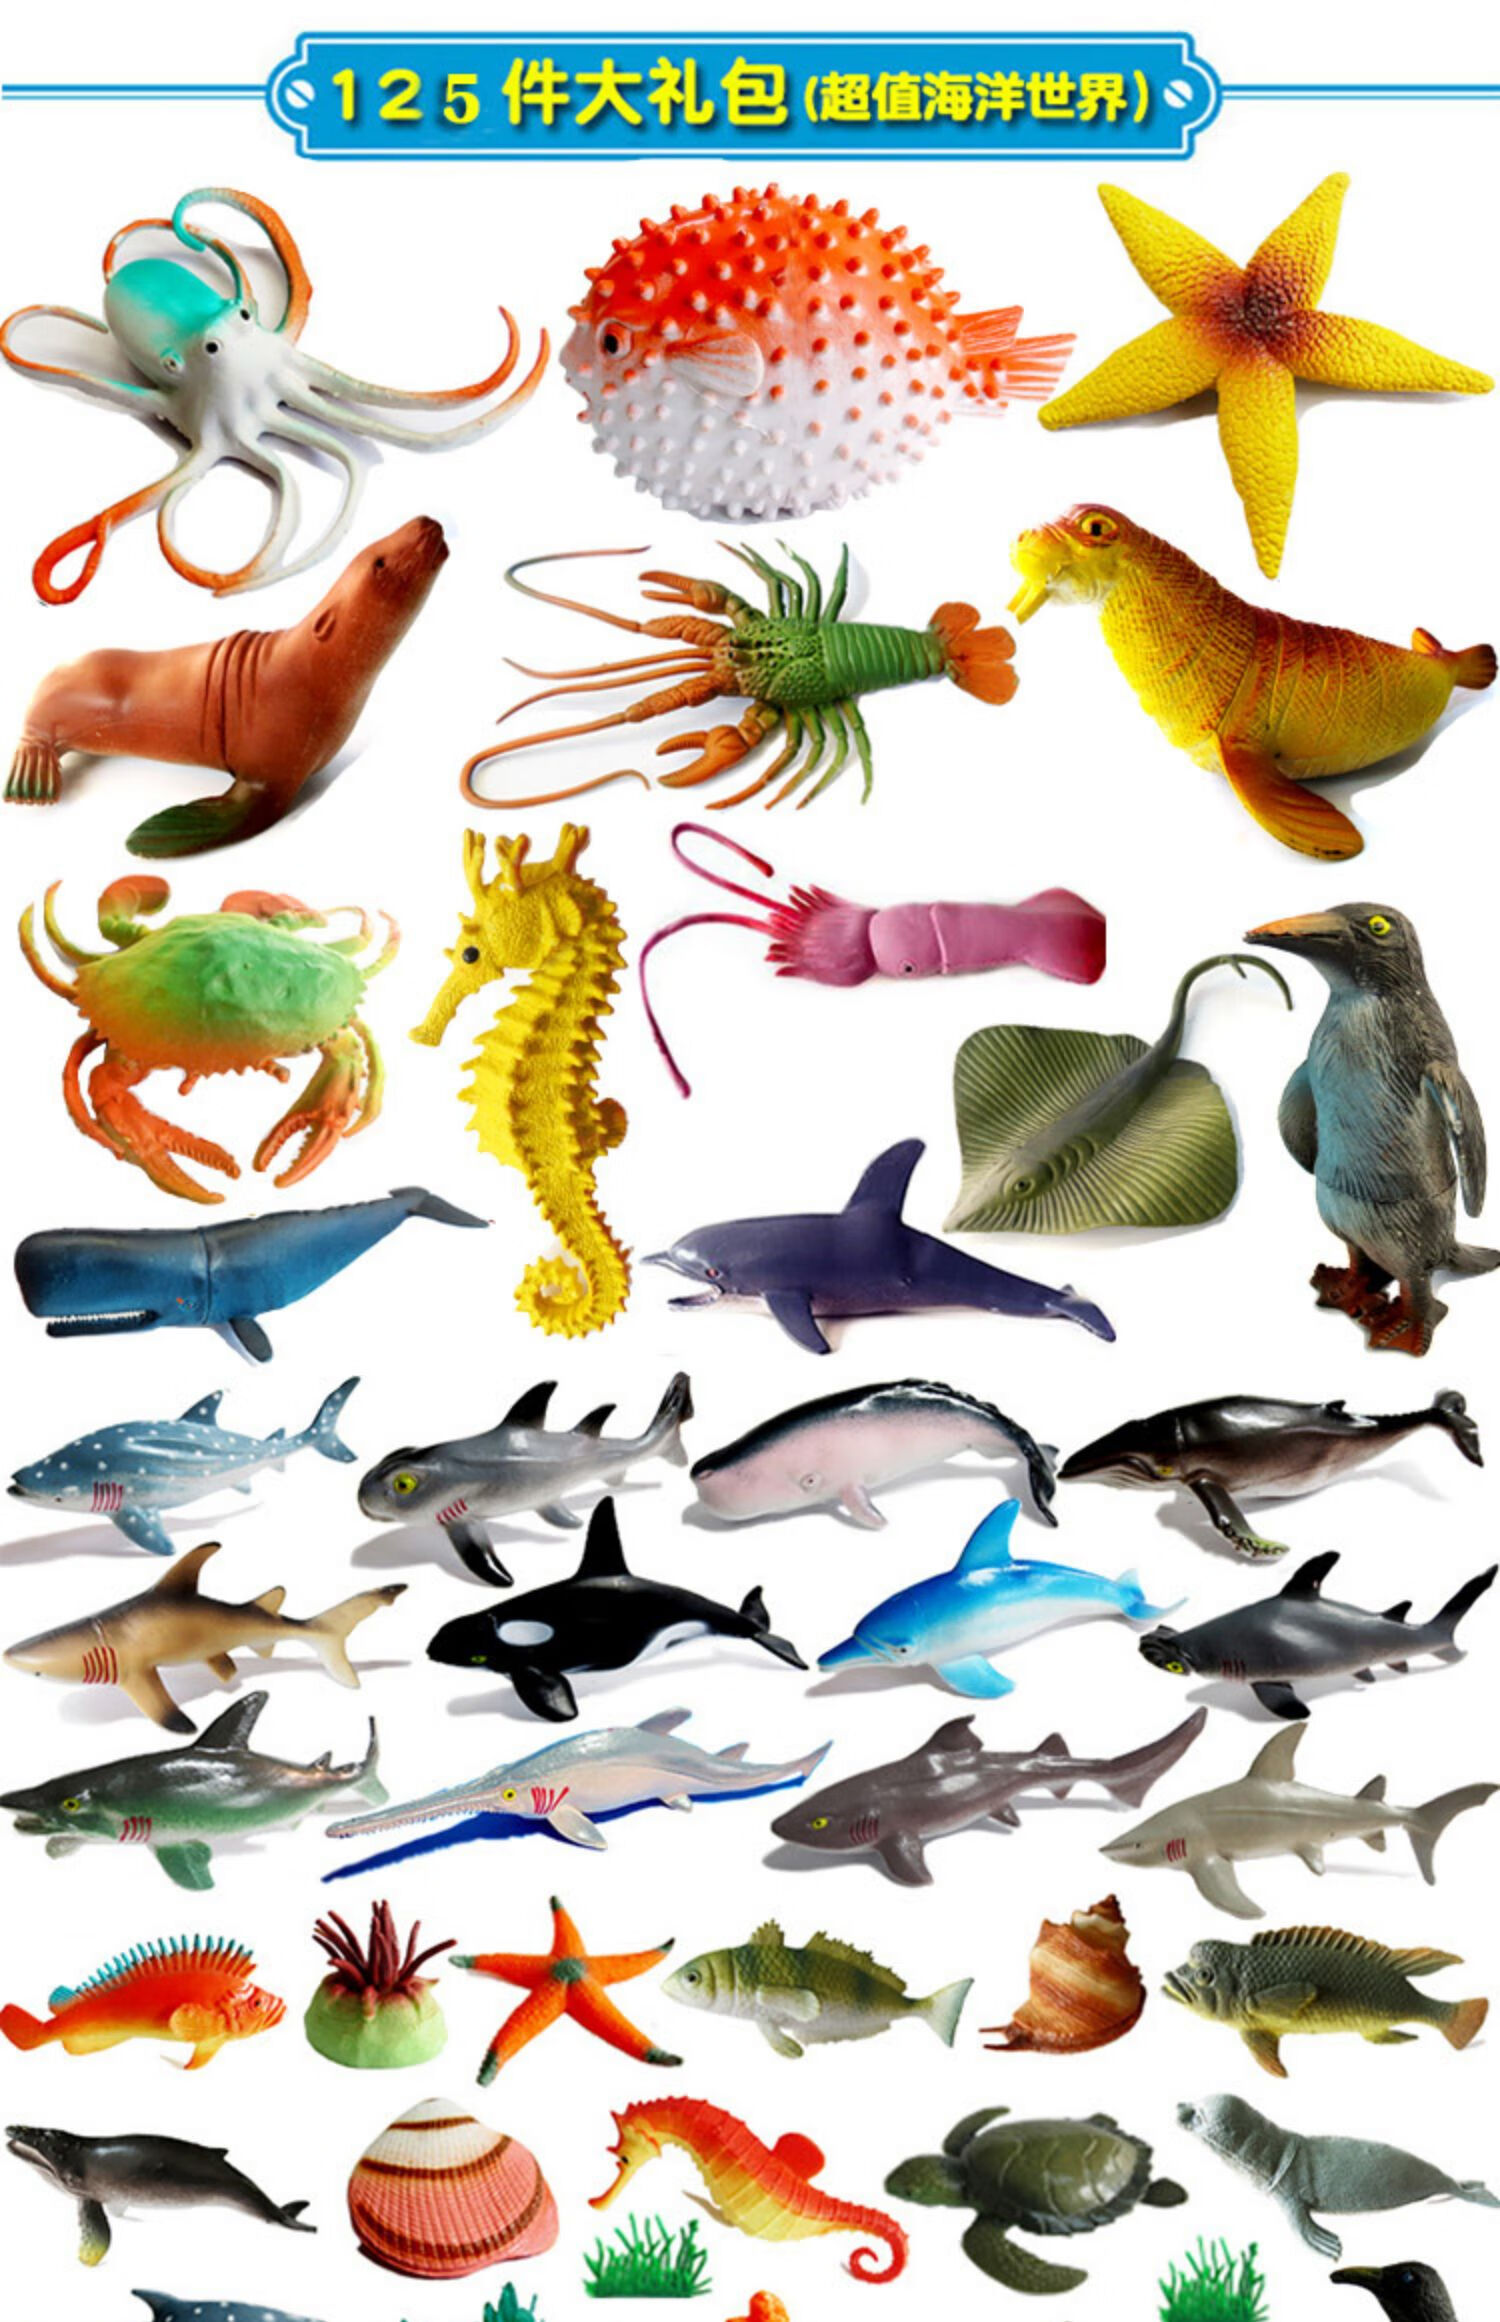 仿真软胶静态海洋动物模型儿童认知玩具河豚海豚鲨鱼热带鱼限量促小